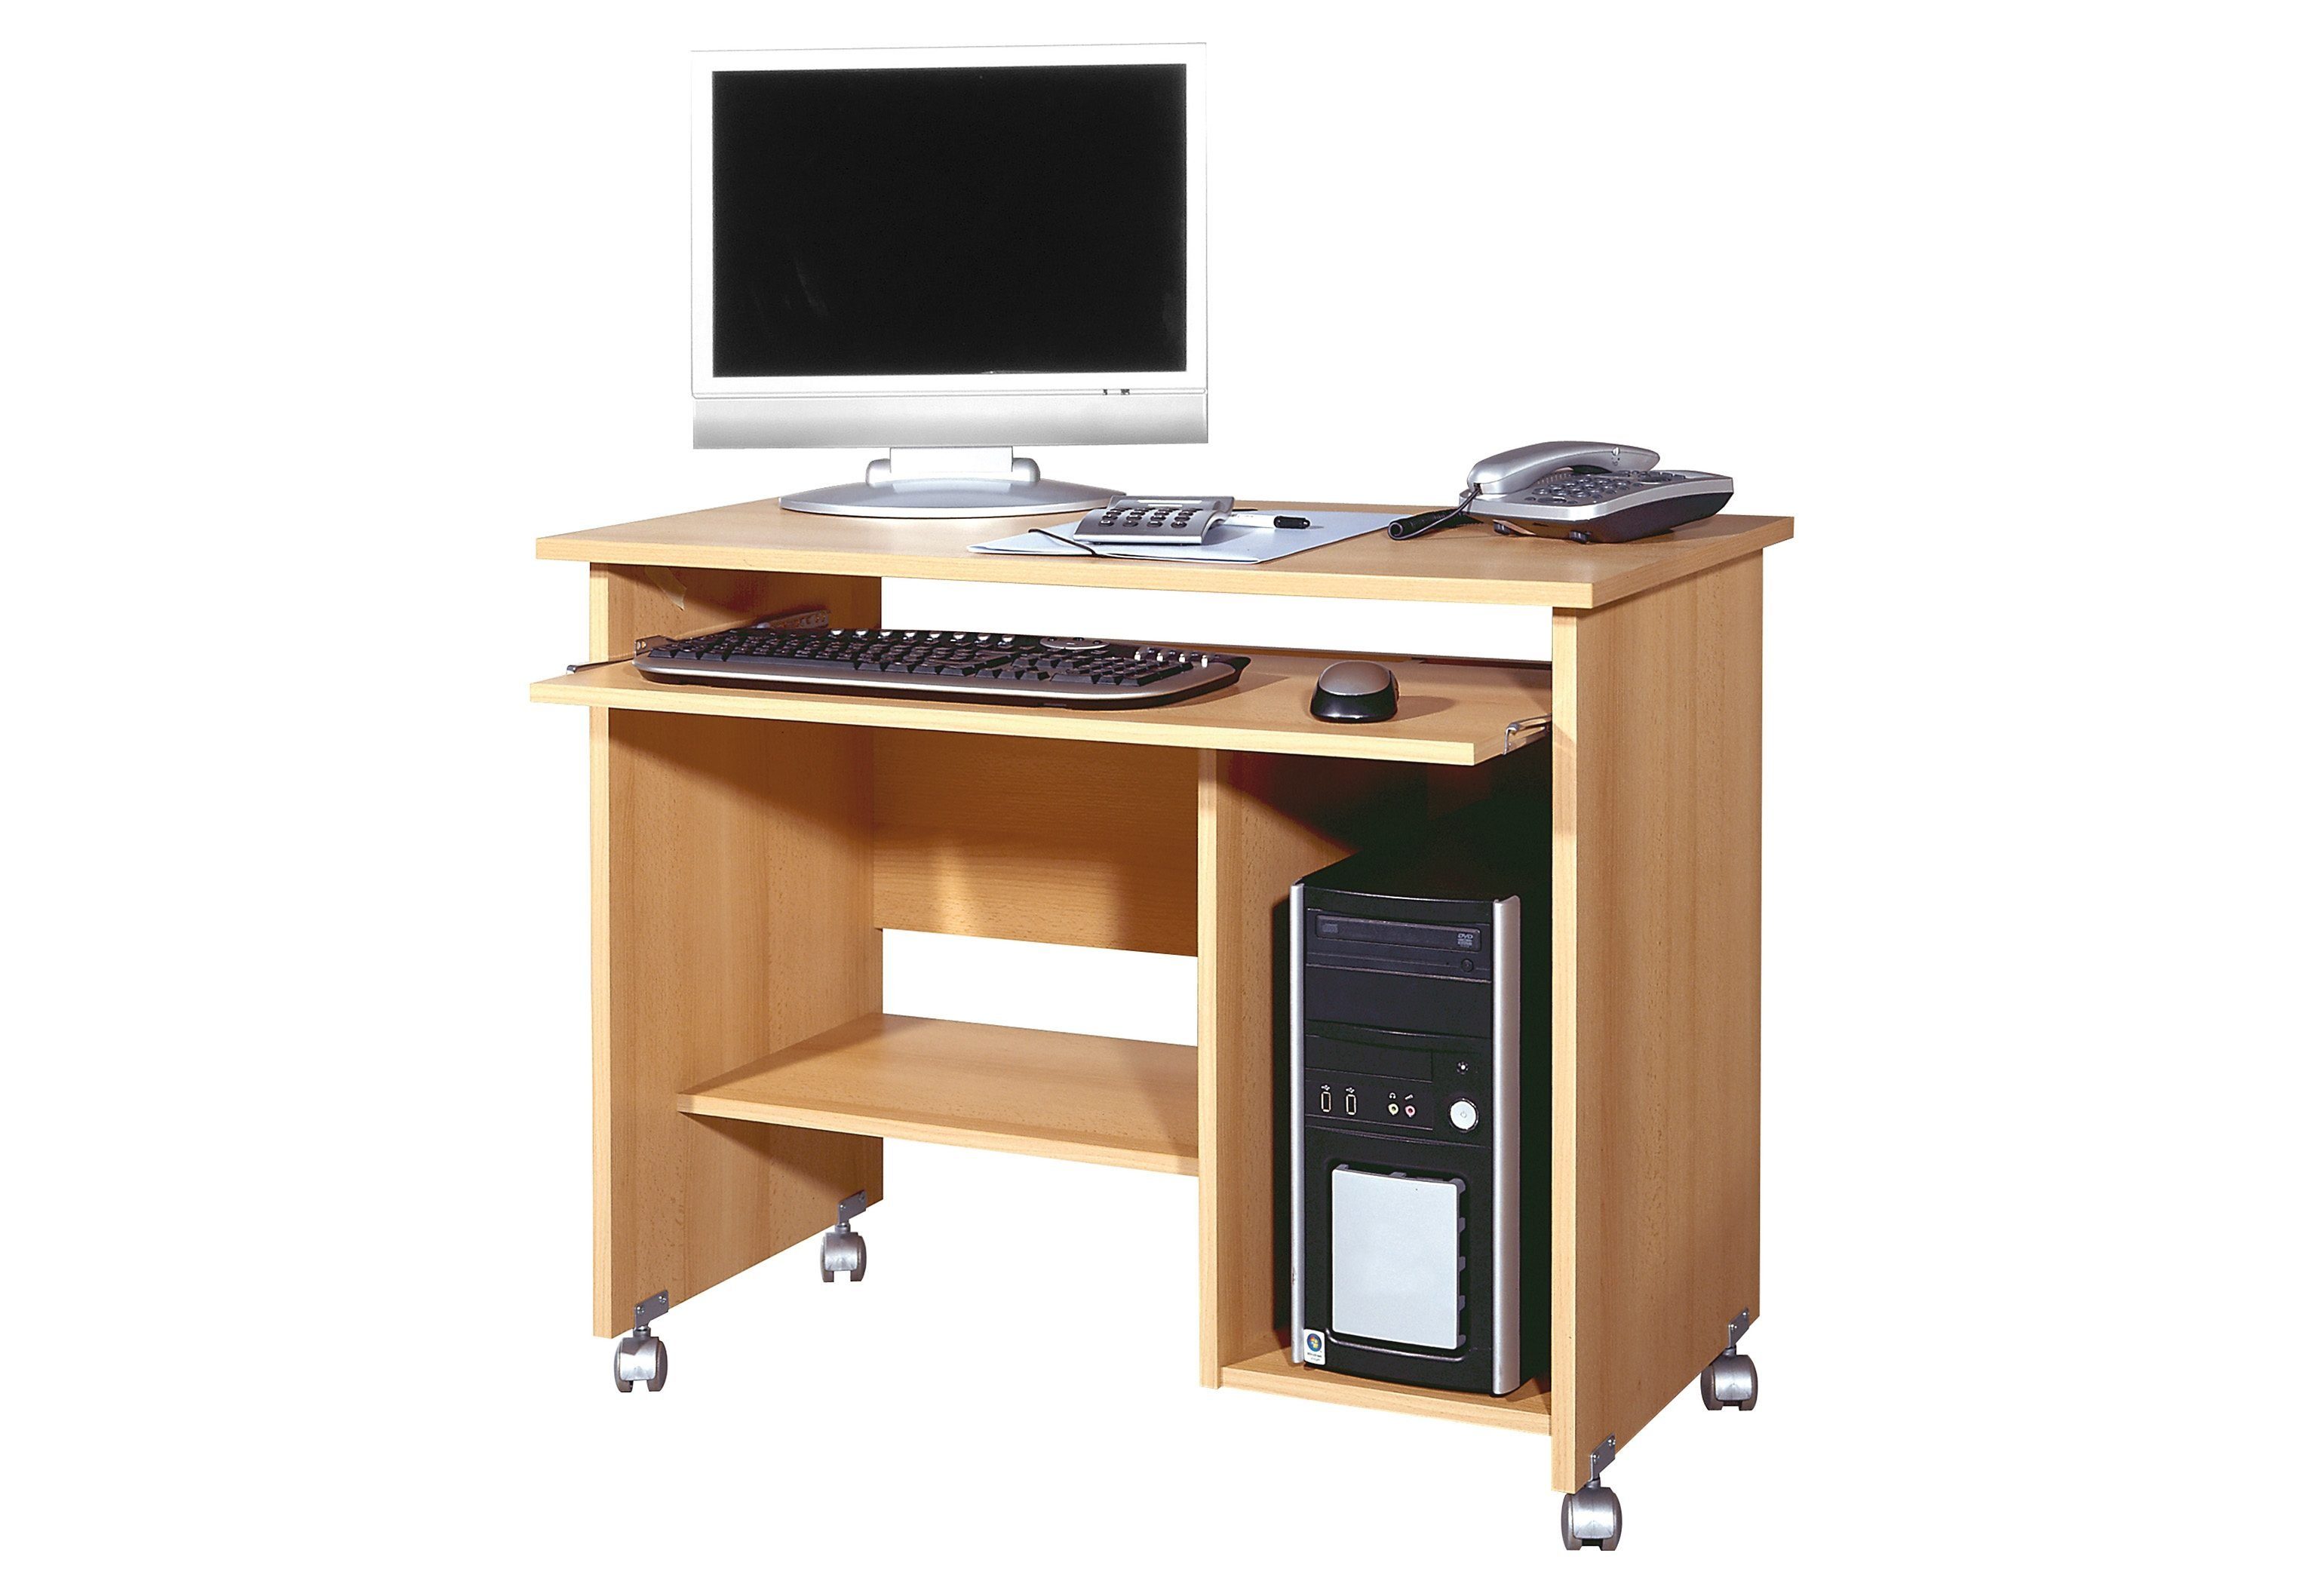 GERMANIA Computertisch 0482 / 0486, Computertisch für das Home Office geeignet, mit Tastatur Auszug buchefarben